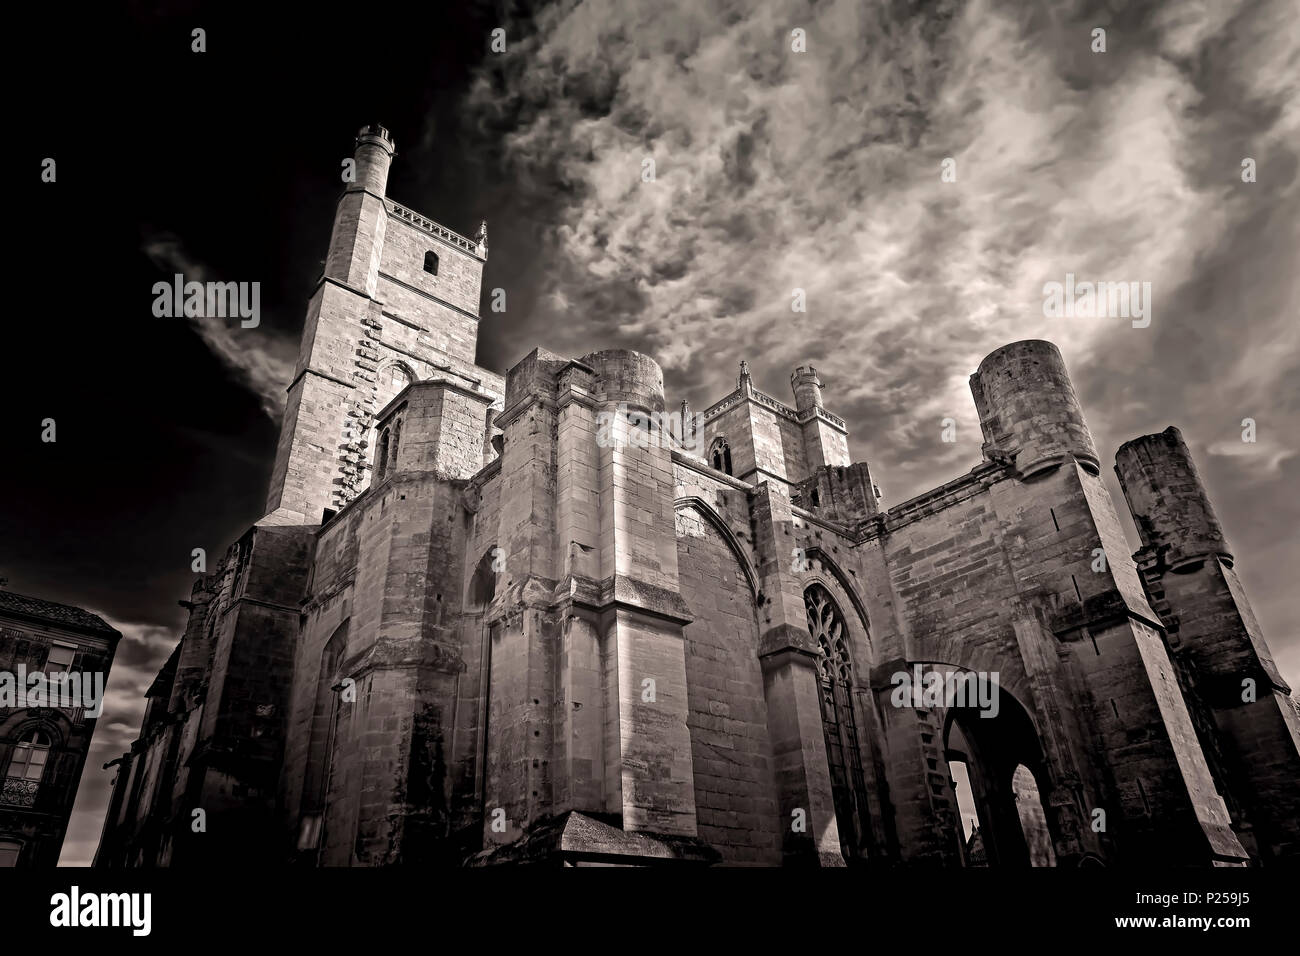 La catedral gótica de San Justo y San Pasteur, el inicio de los trabajos de construcción en 1272, en blanco y negro Foto de stock